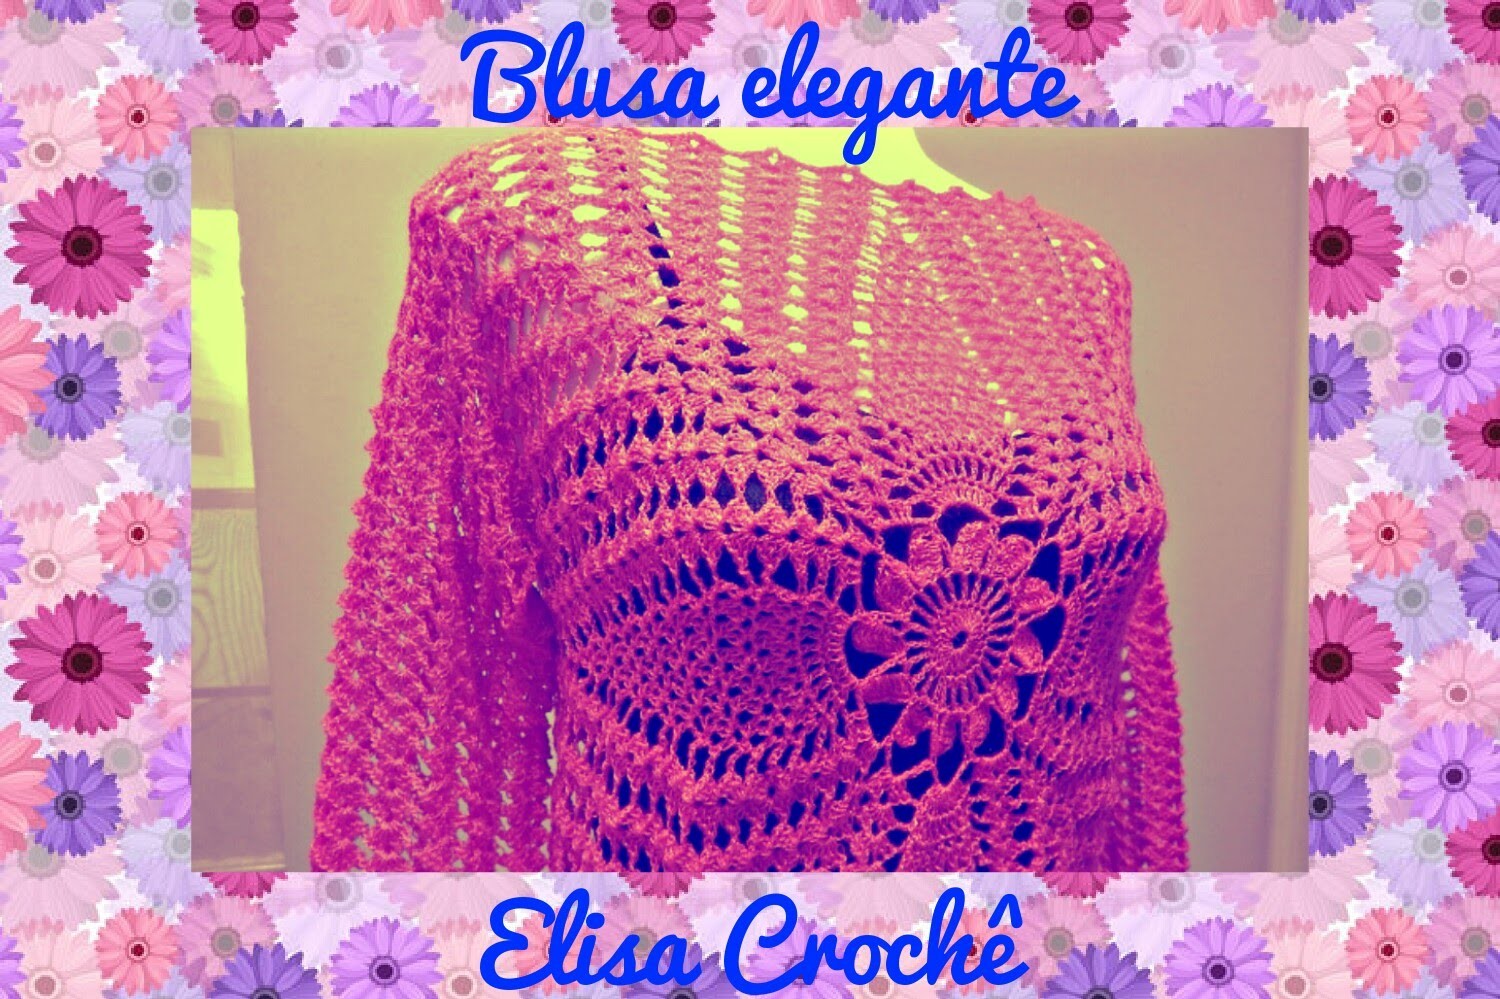 Blusa elegante em crochê 40.42 (M) ( 1ª parte ) # Elisa Crochê